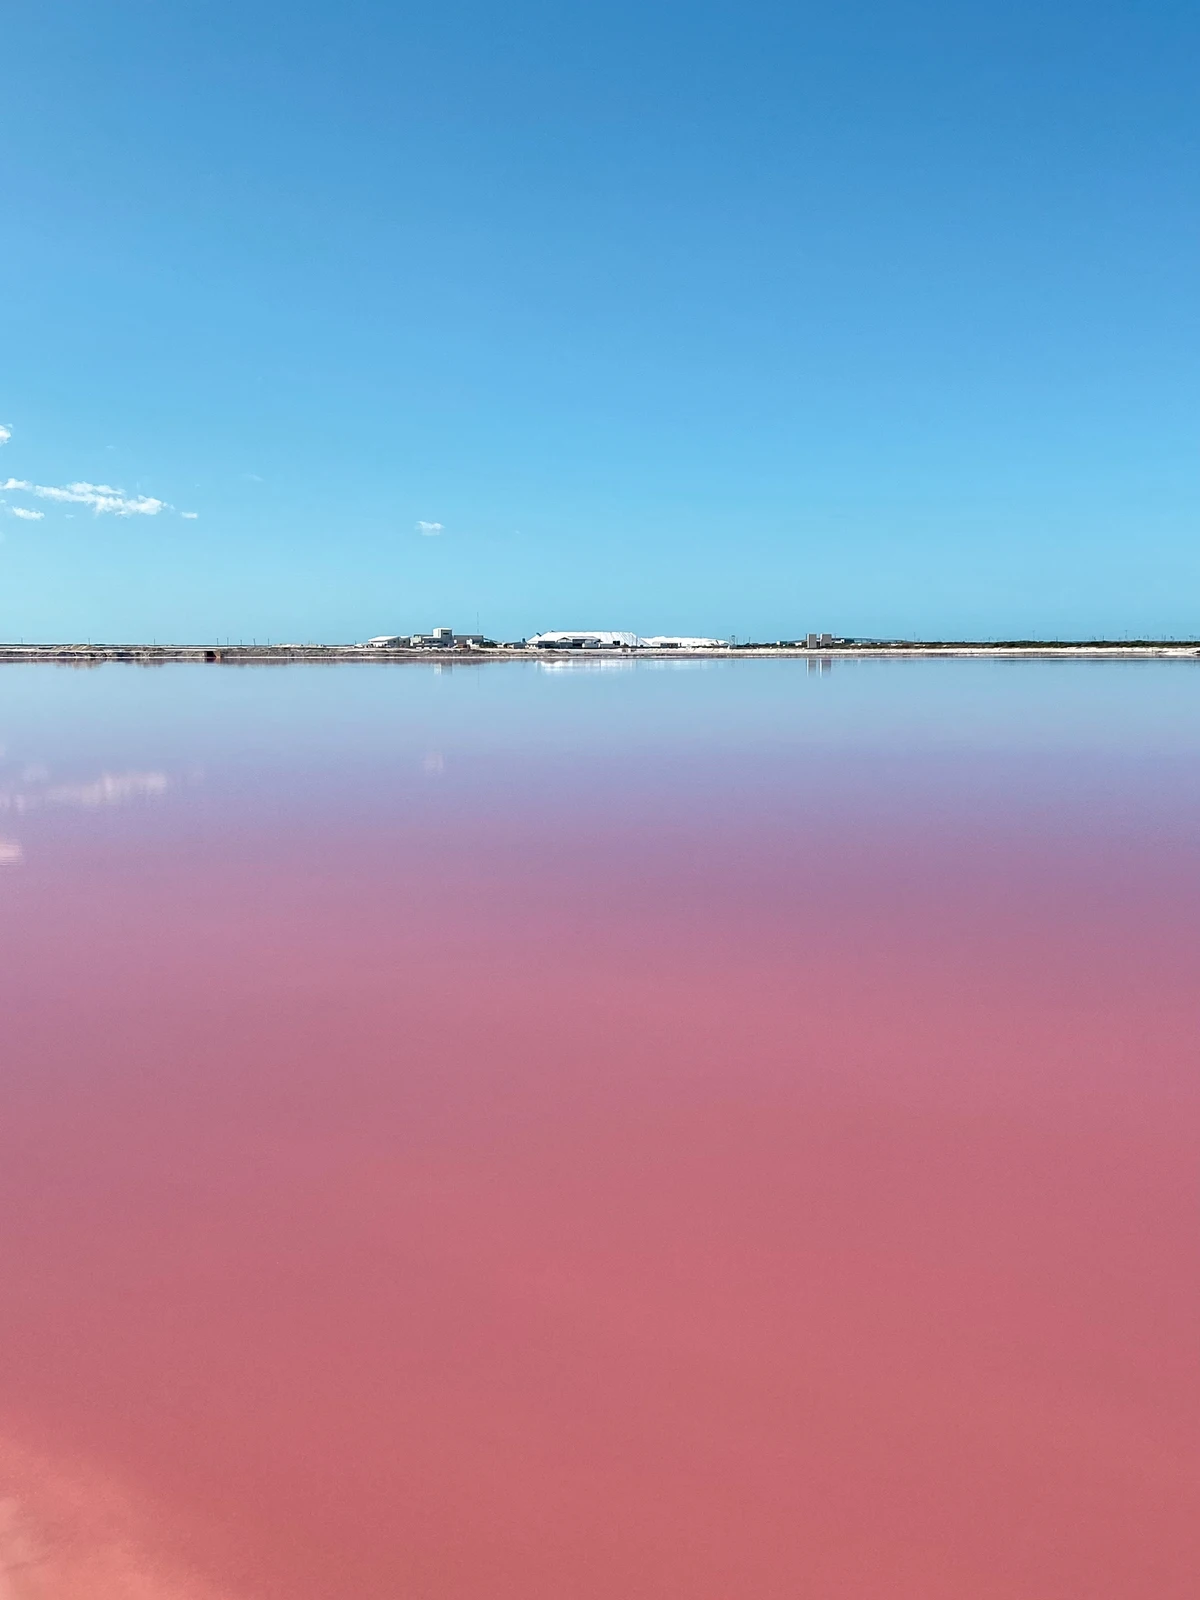 本当にピンク色 一生に一度は見たい 絶景湖 川越コウが投稿したフォトブック Lemon8